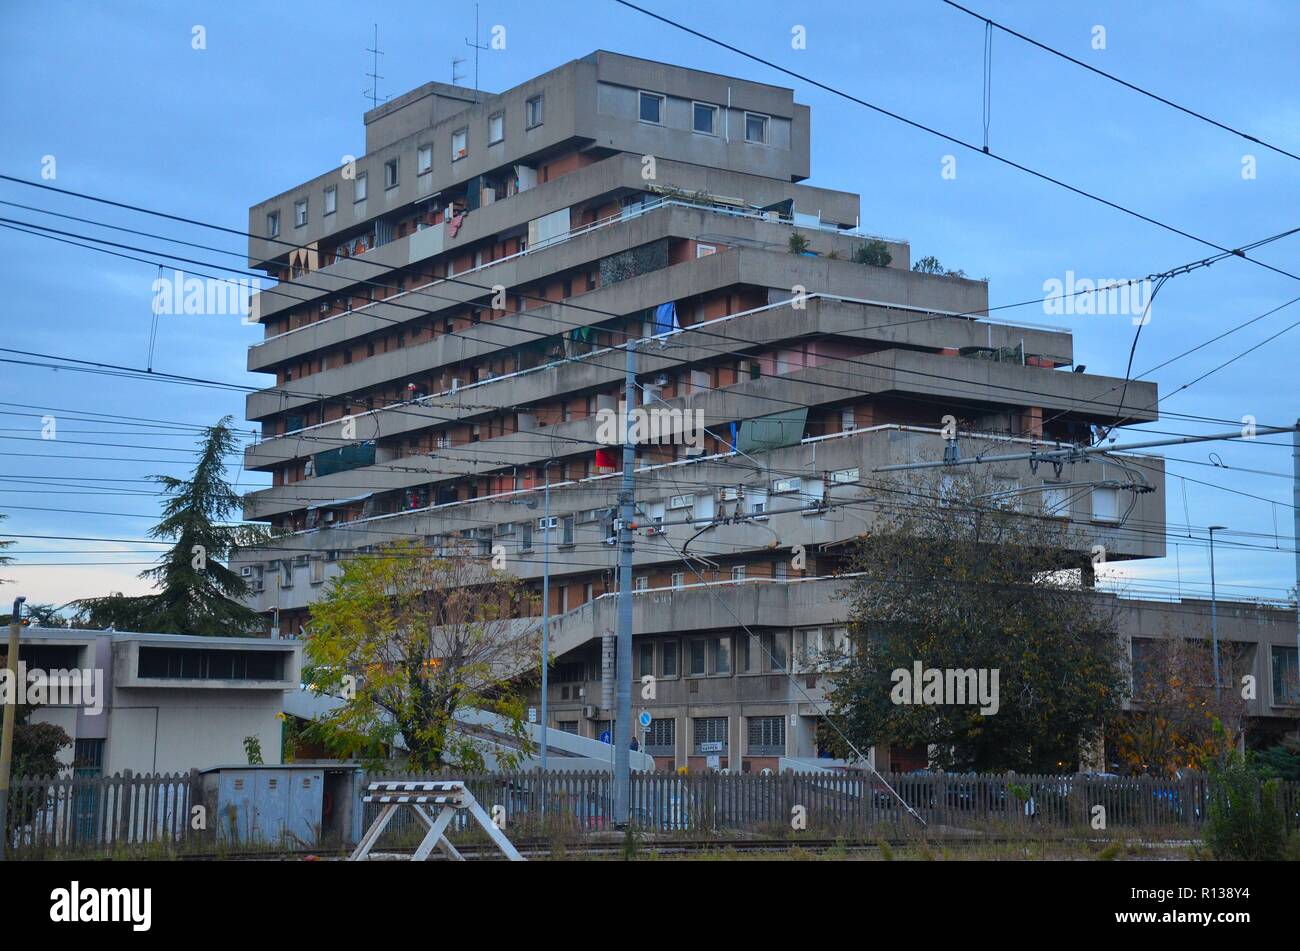 Módena, eine der Stadt en Emilia-Romagna en Italien: Ein Wohnblock im Stil des Brutalismus Foto de stock